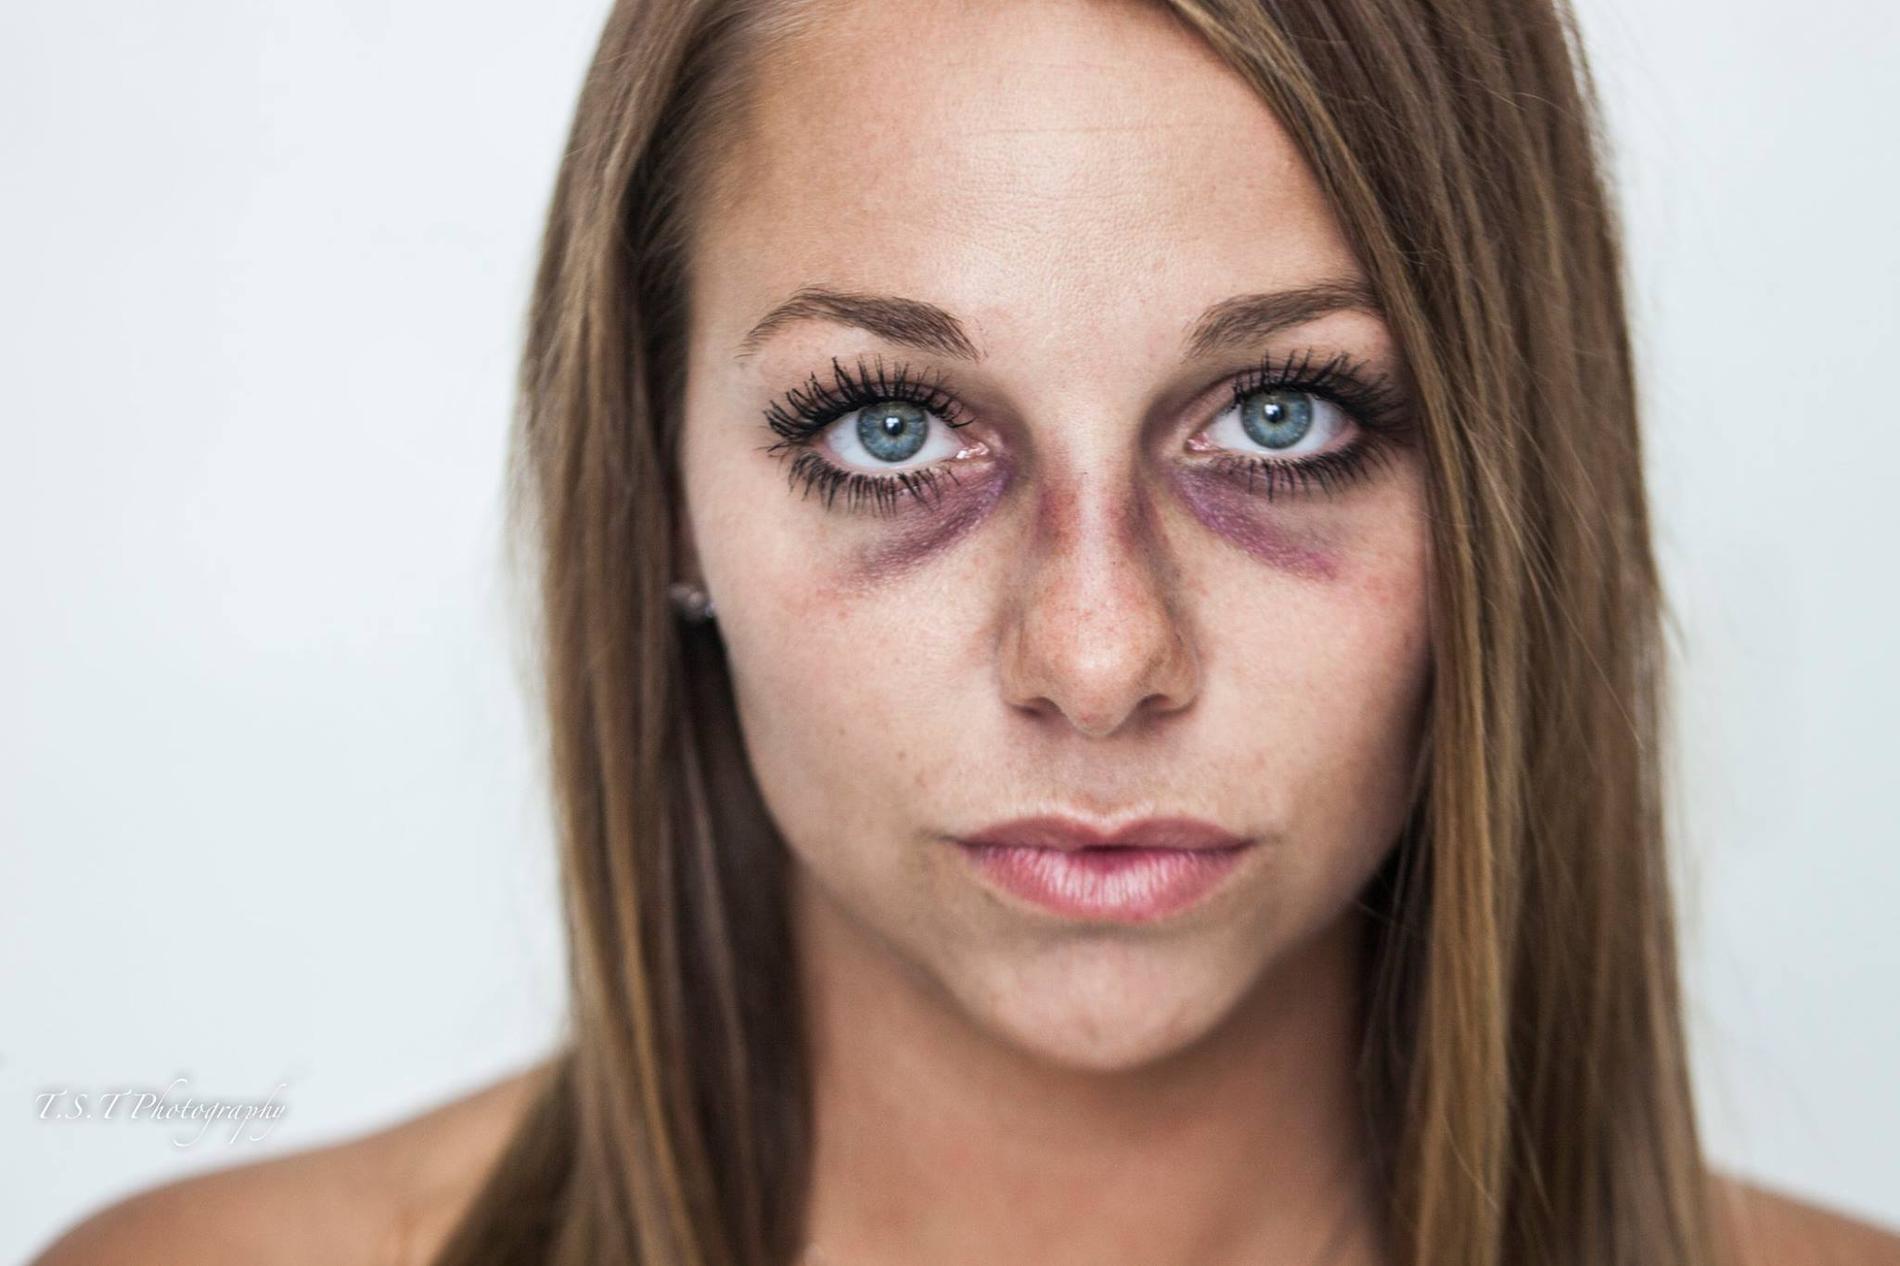 Résultat de recherche d'images pour "photos de femmes battues"